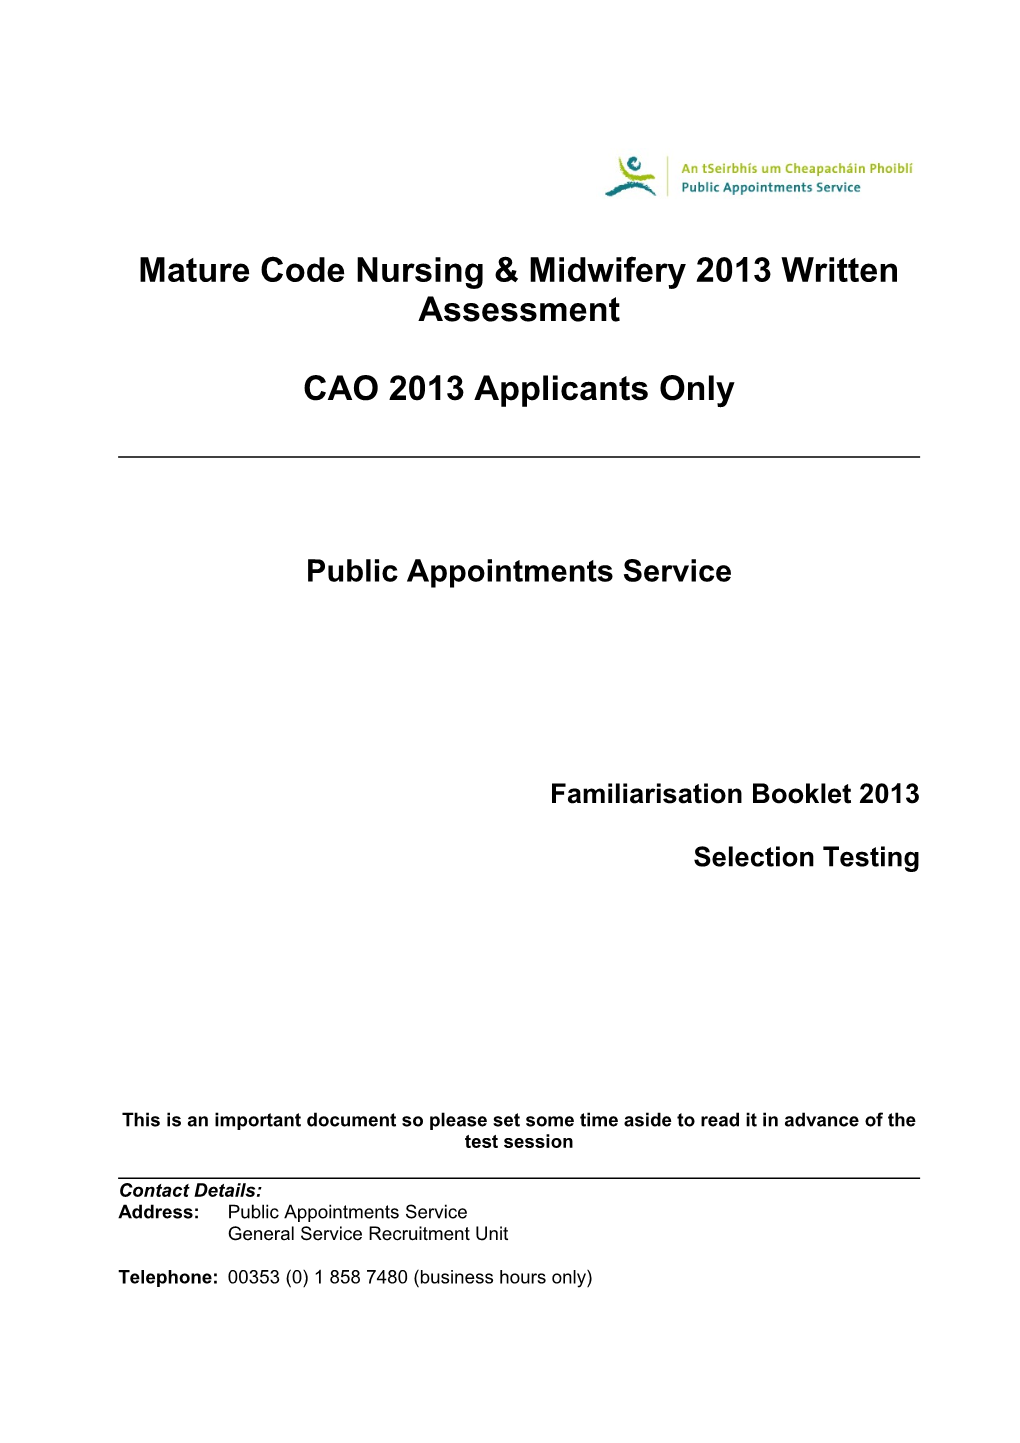 Mature Code Nursing & Midwifery 2013 Written Assessment